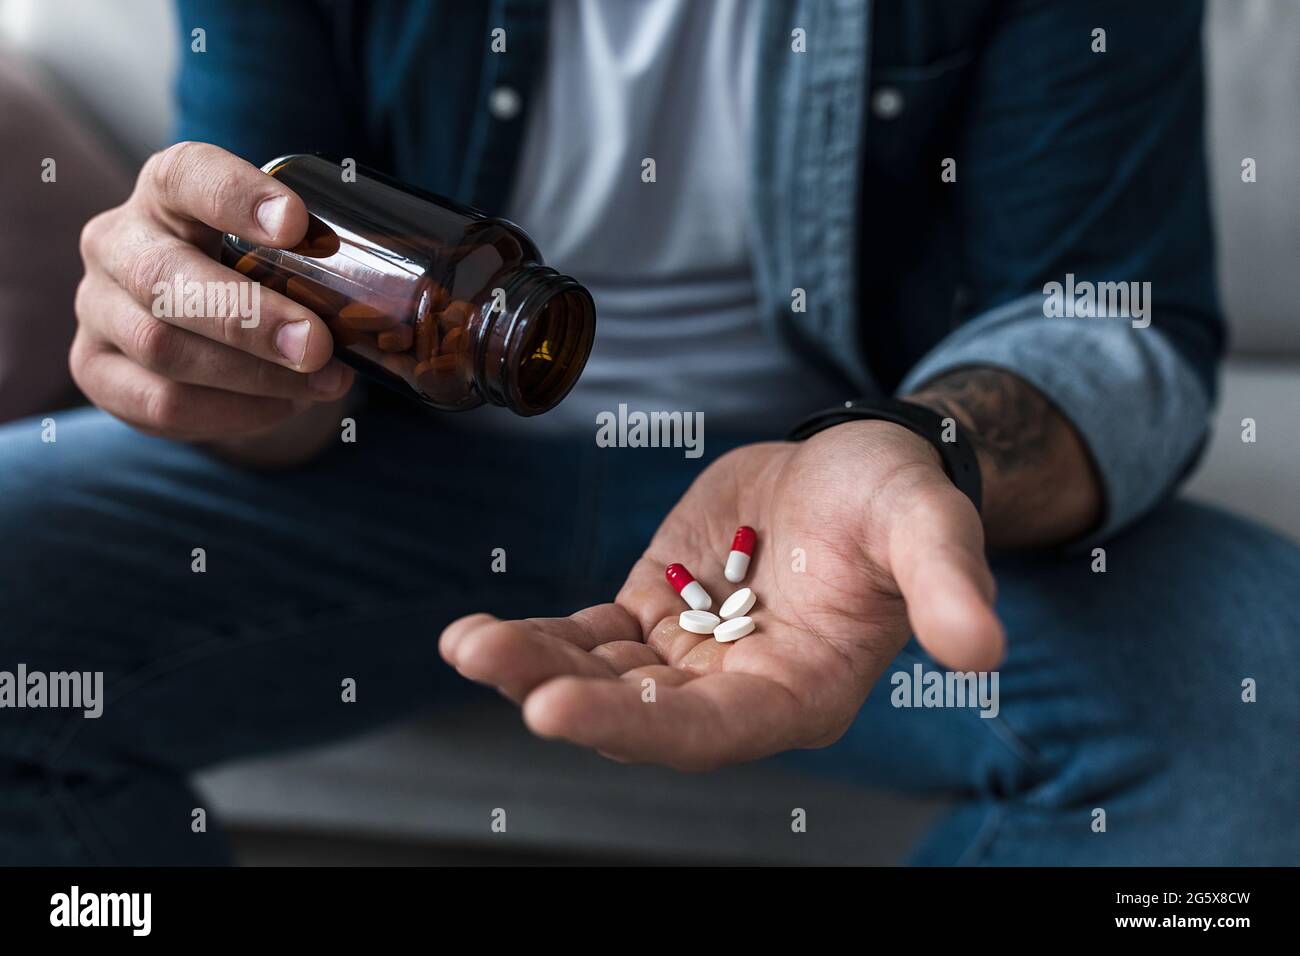 Eine Handvoll weißer Pillen in der Handfläche männlicher Patienten. Gesundheit, Behandlung, Medikamente und Depressionen, Schmerzen und Selbstmord Stockfoto